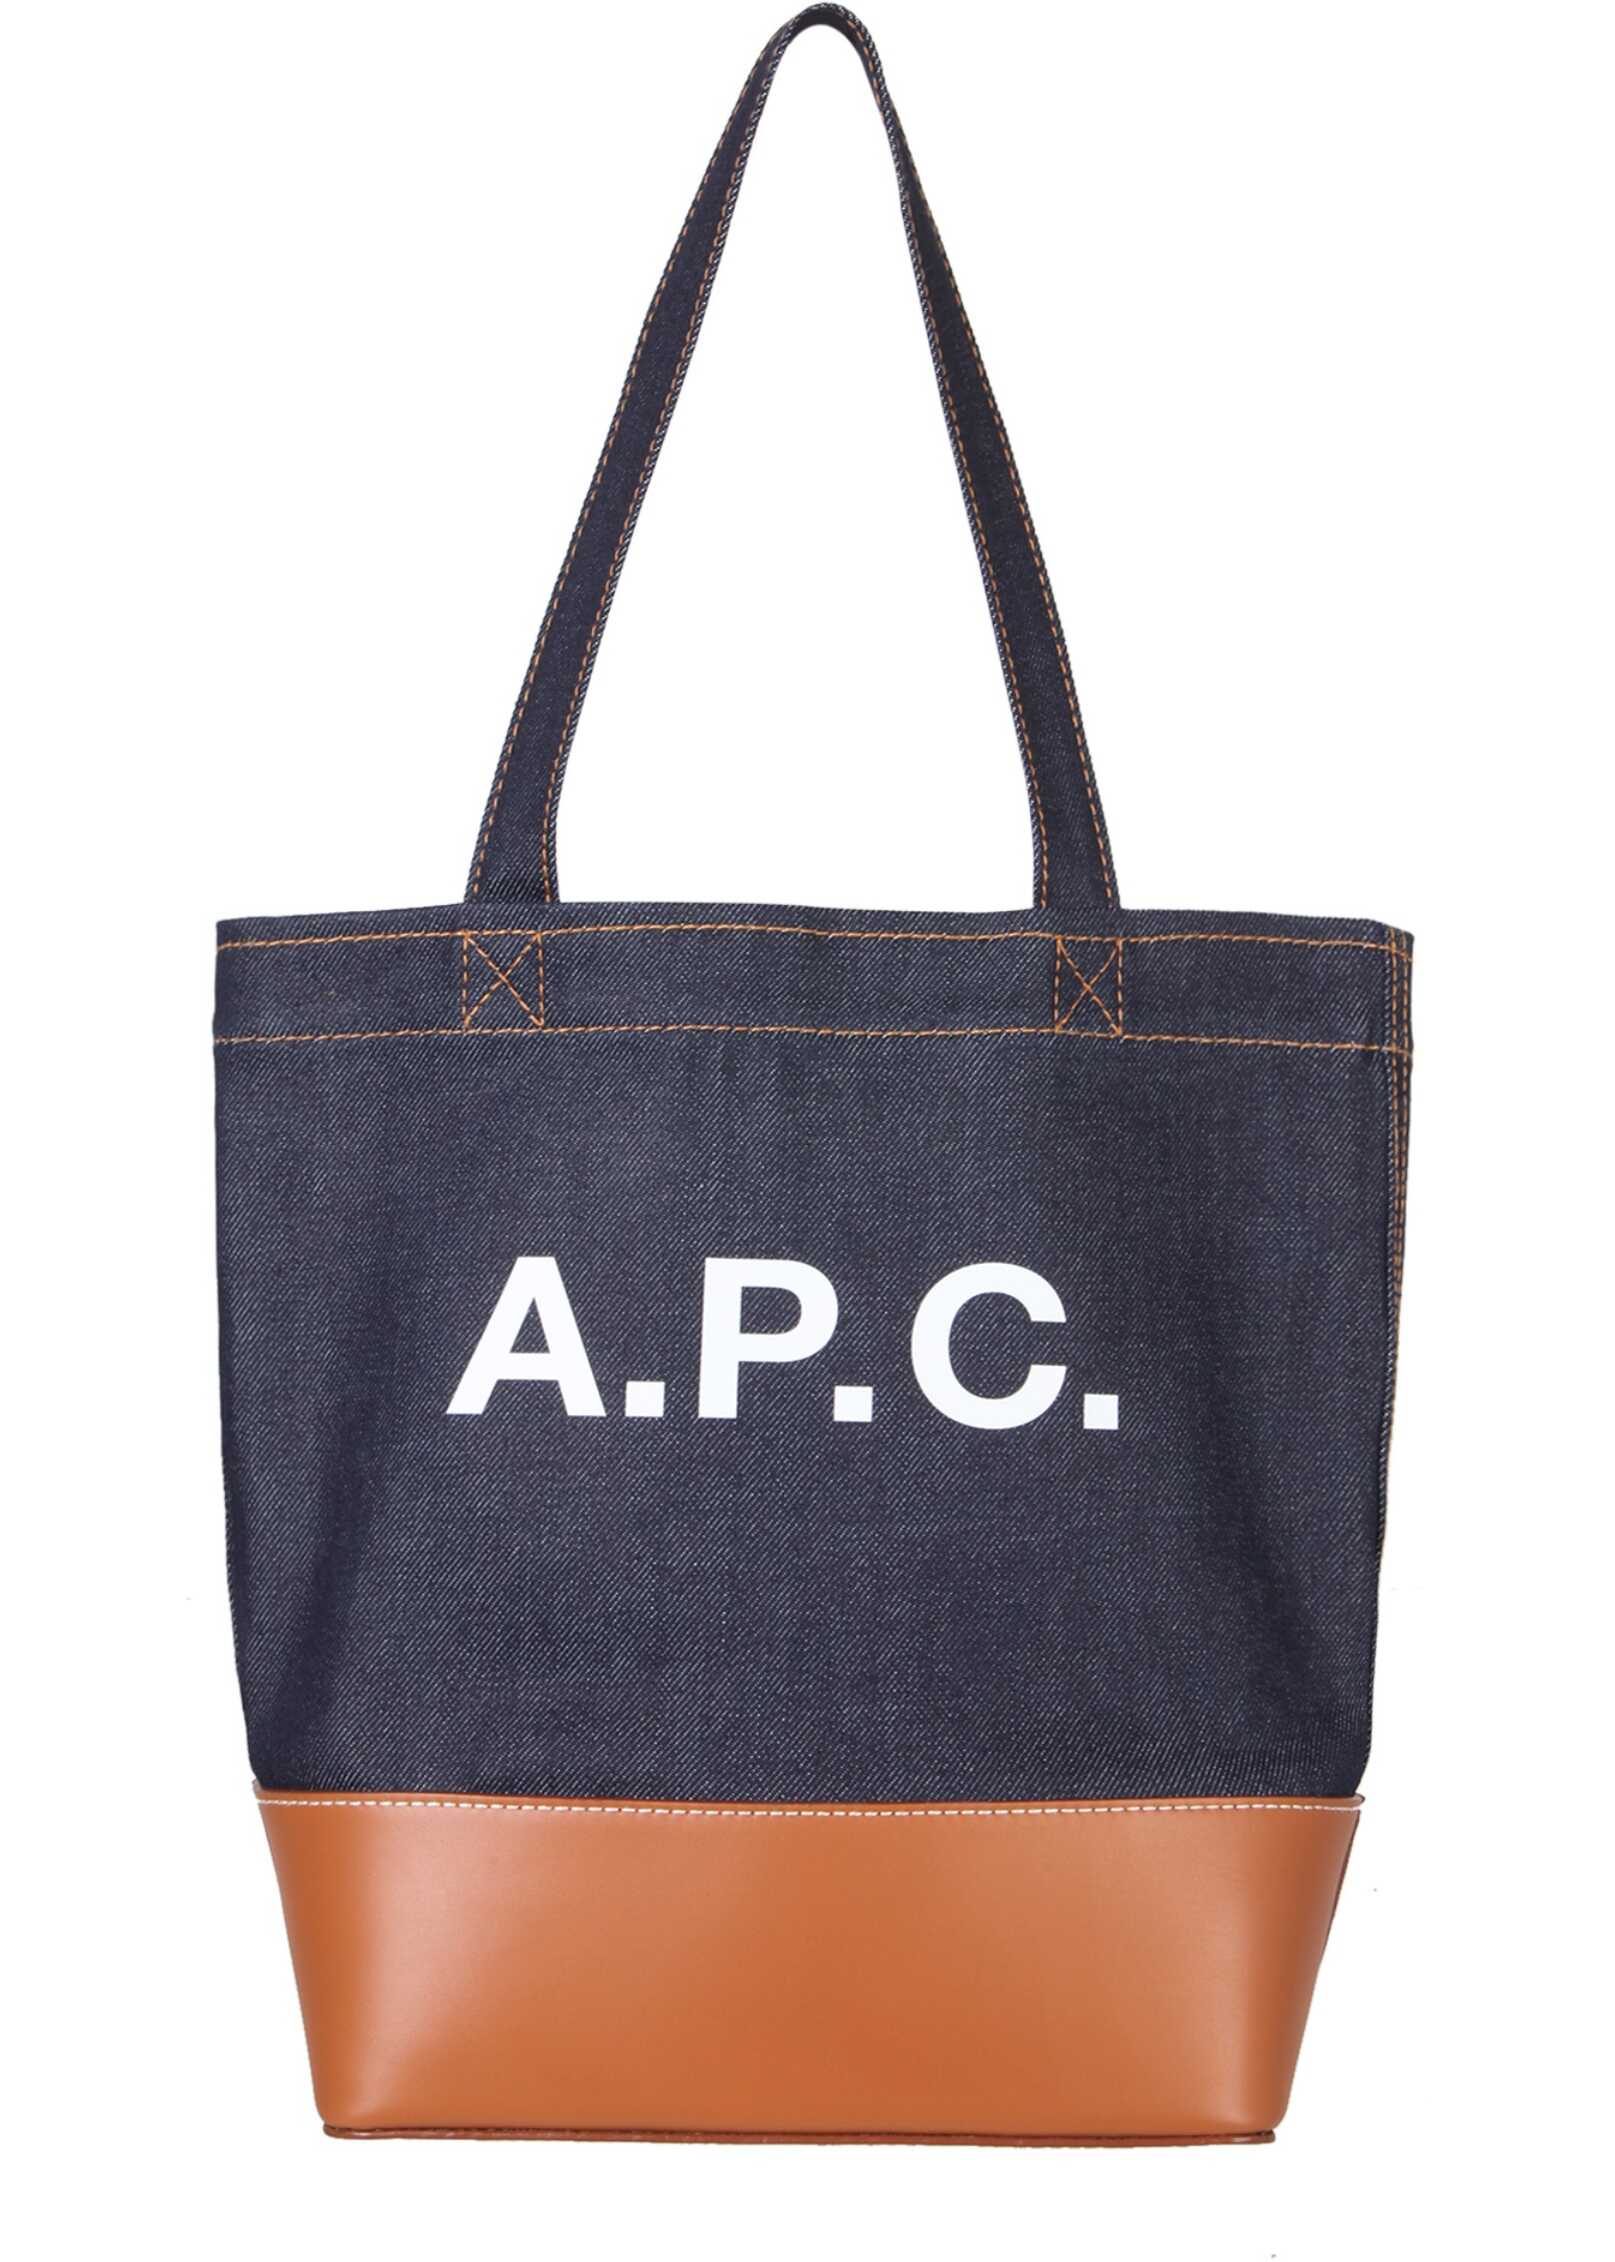 A.P.C. Tote Bag Axel BROWN